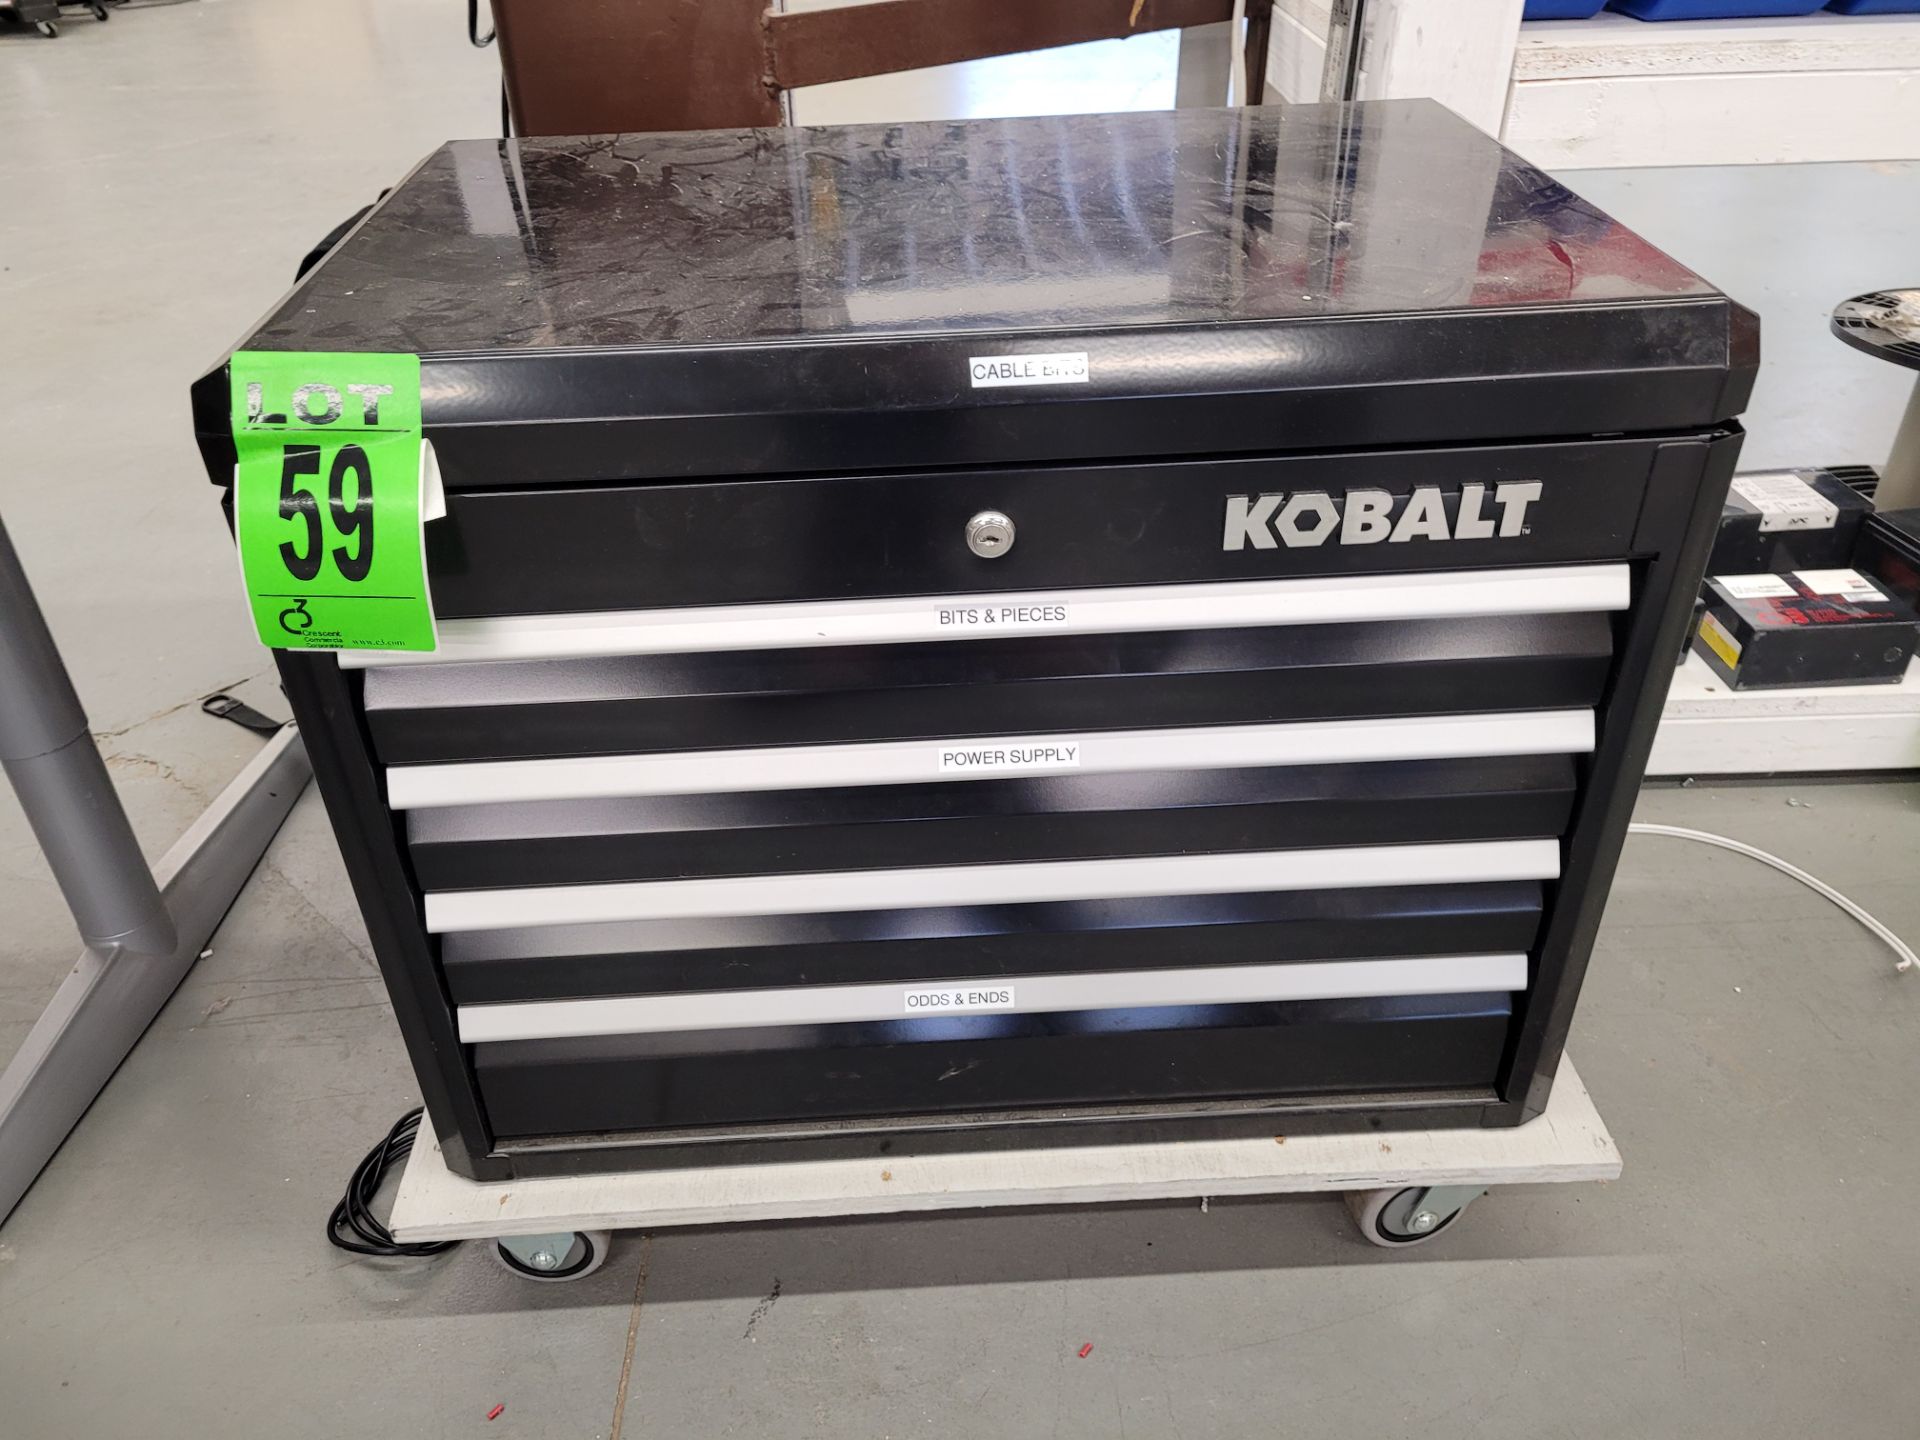 KOBALT 4-drawer toolchest and rolling platform - Image 2 of 2